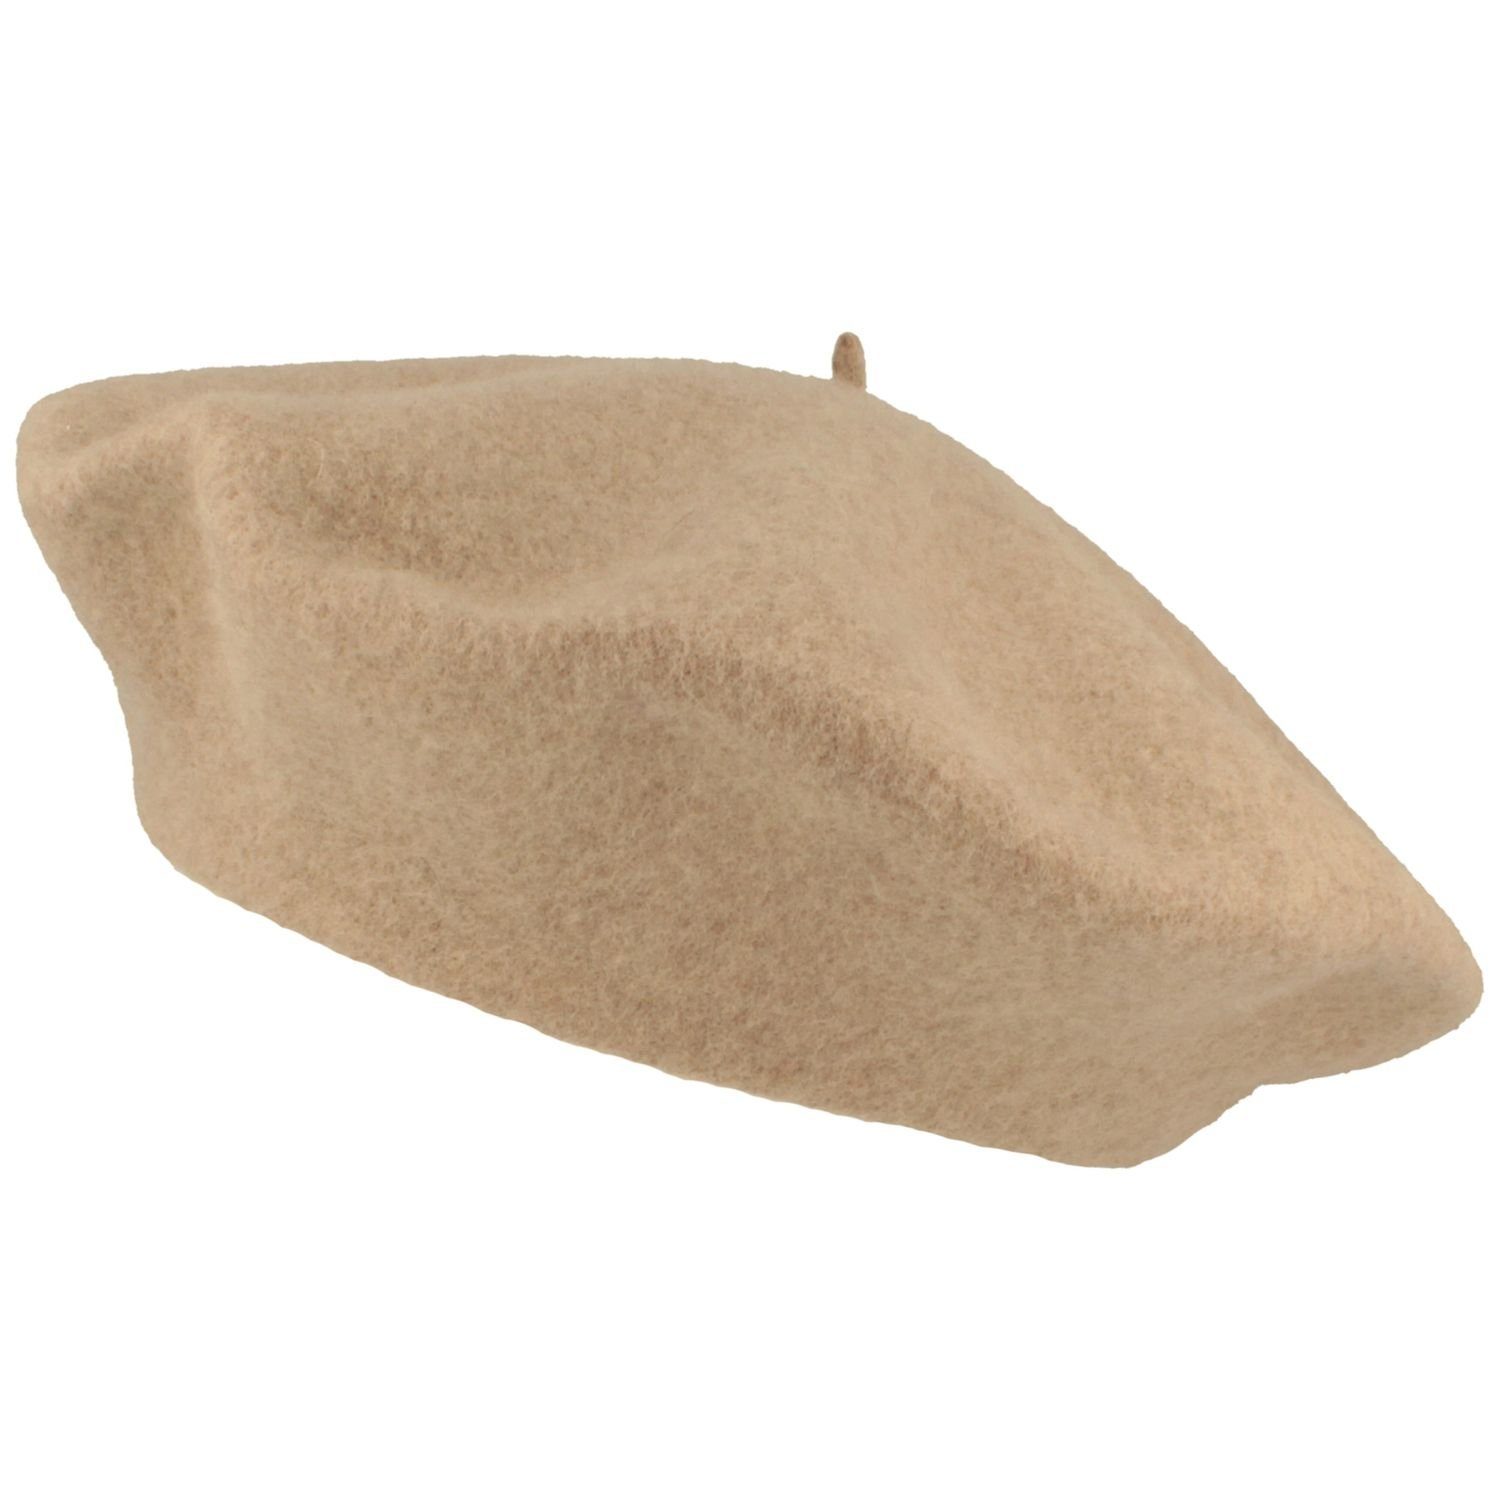 McBurn Baskenmütze Große Baskenmütze aus 100% Wolle angenehm weich 44 beige mel.